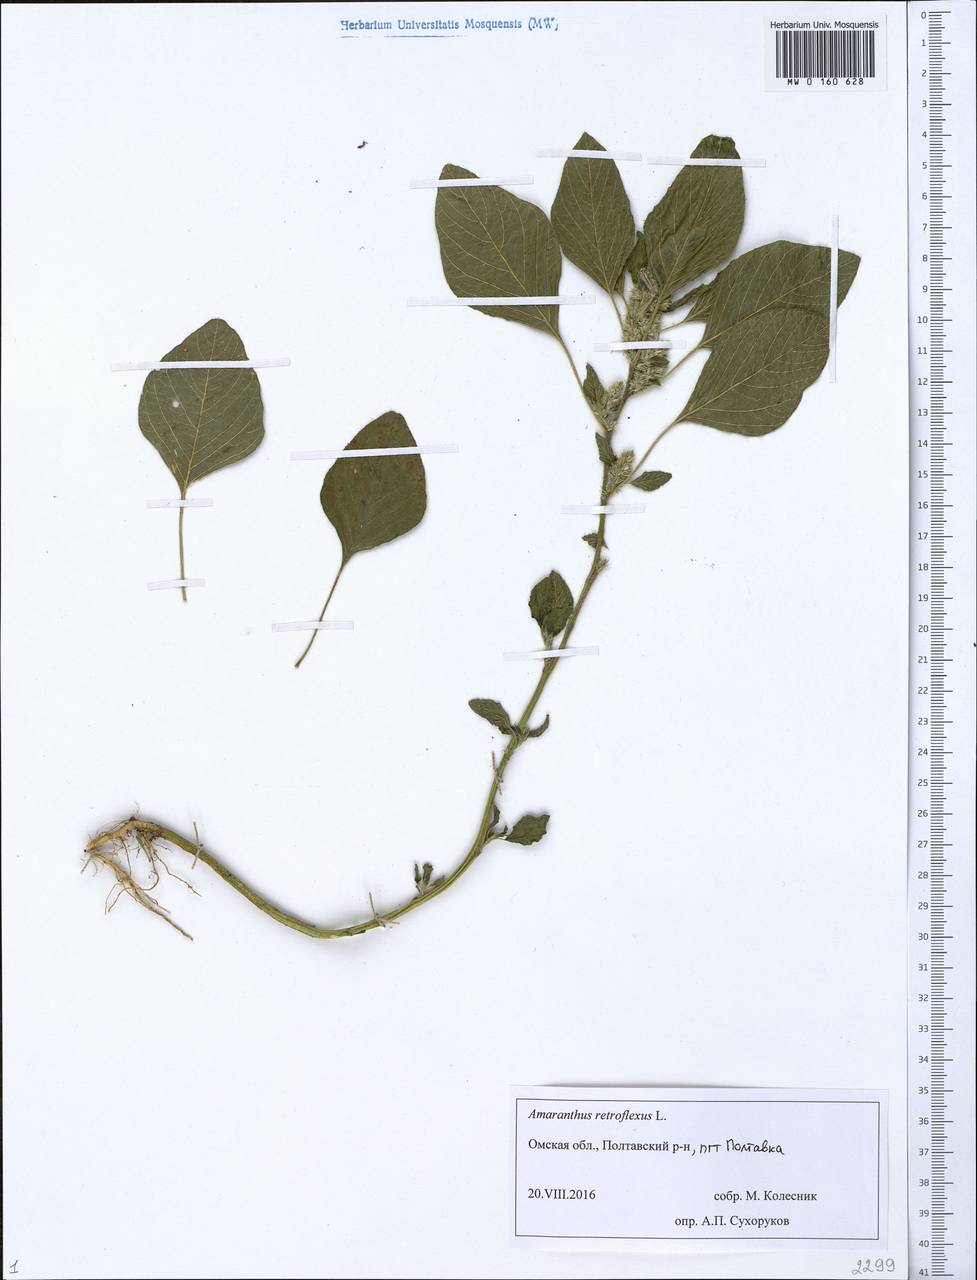 Amaranthus retroflexus L., Siberia, Western Siberia (S1) (Russia)